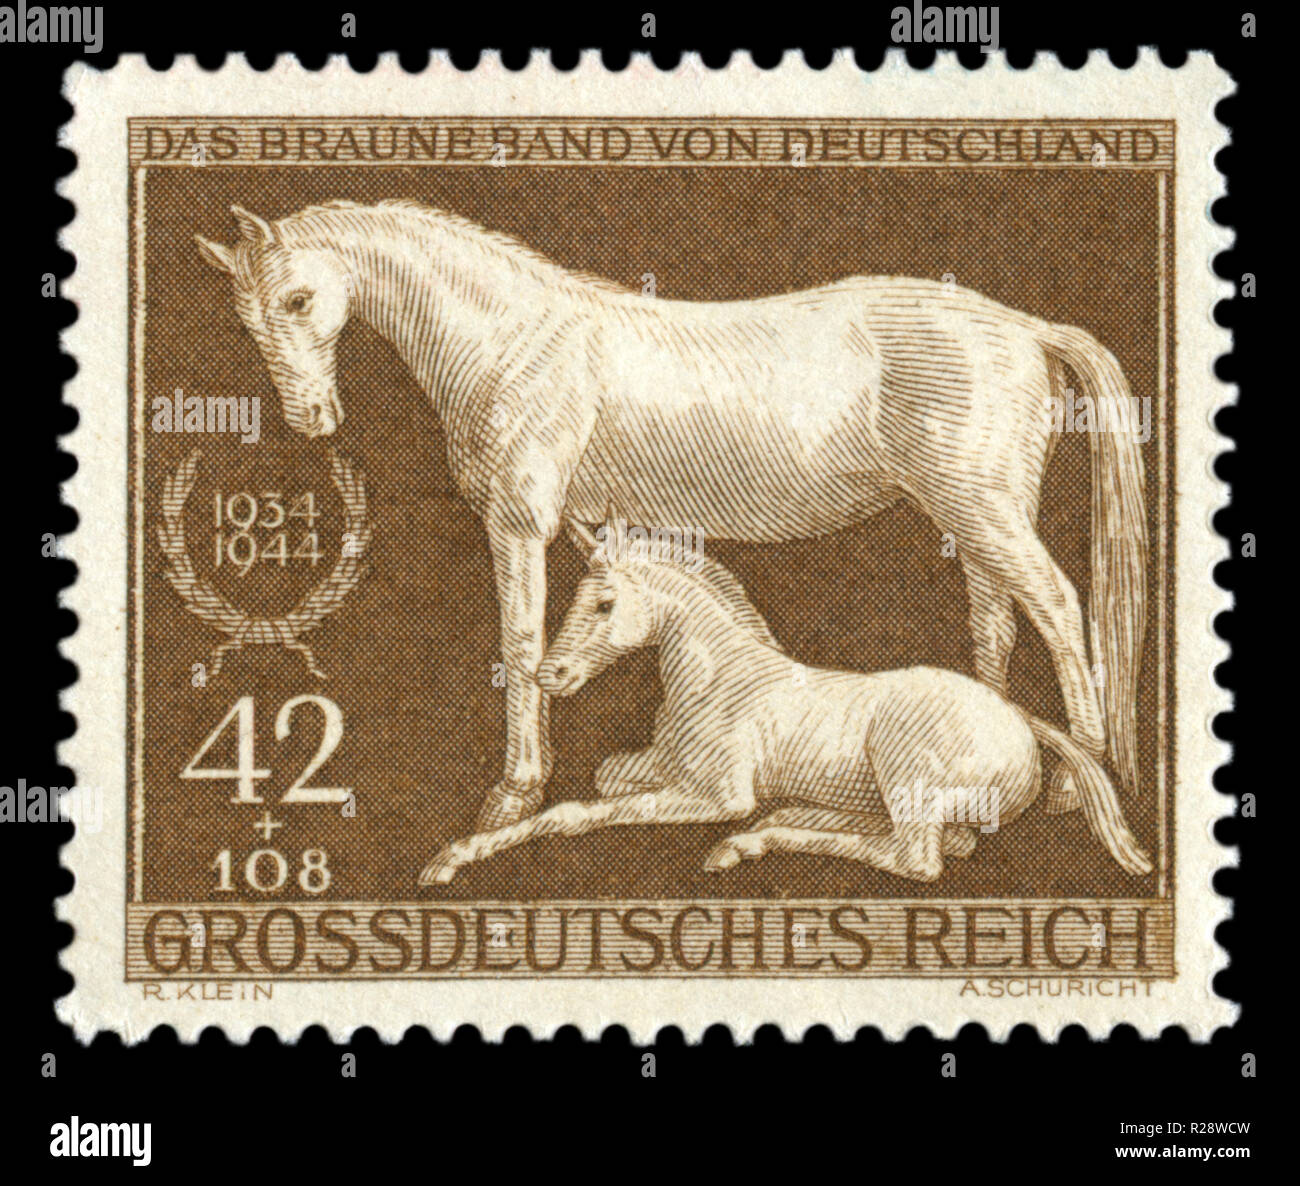 Timbre historique allemand : un cheval avec un poulain. 11ème édition du championnat de course de chevaux allemands Brown 'ribbon' 1944. Isolé sur fond noir, Banque D'Images